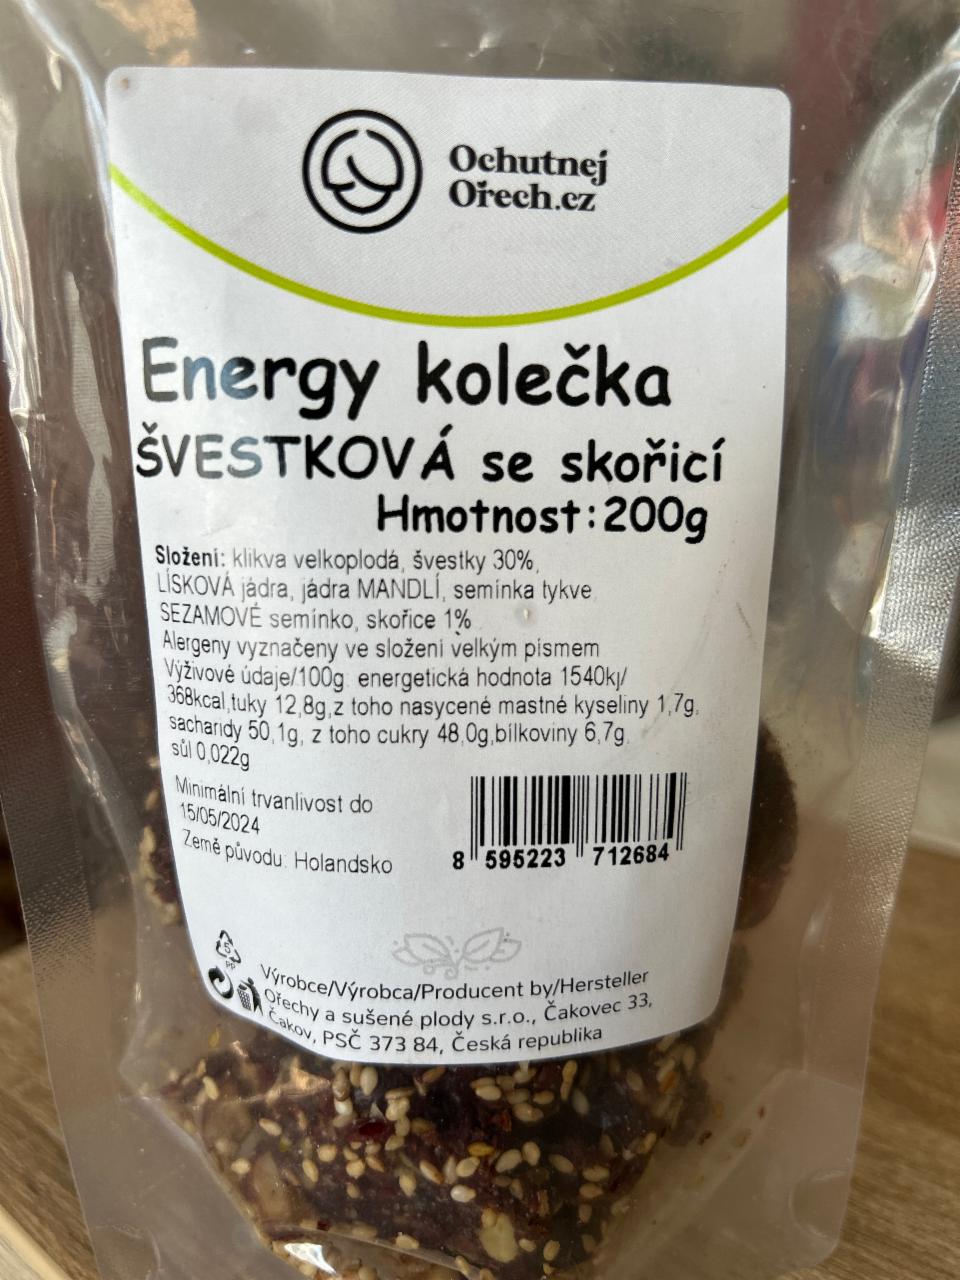 Fotografie - Energy kolečka švestková se skořicí Ochutnejorech.cz